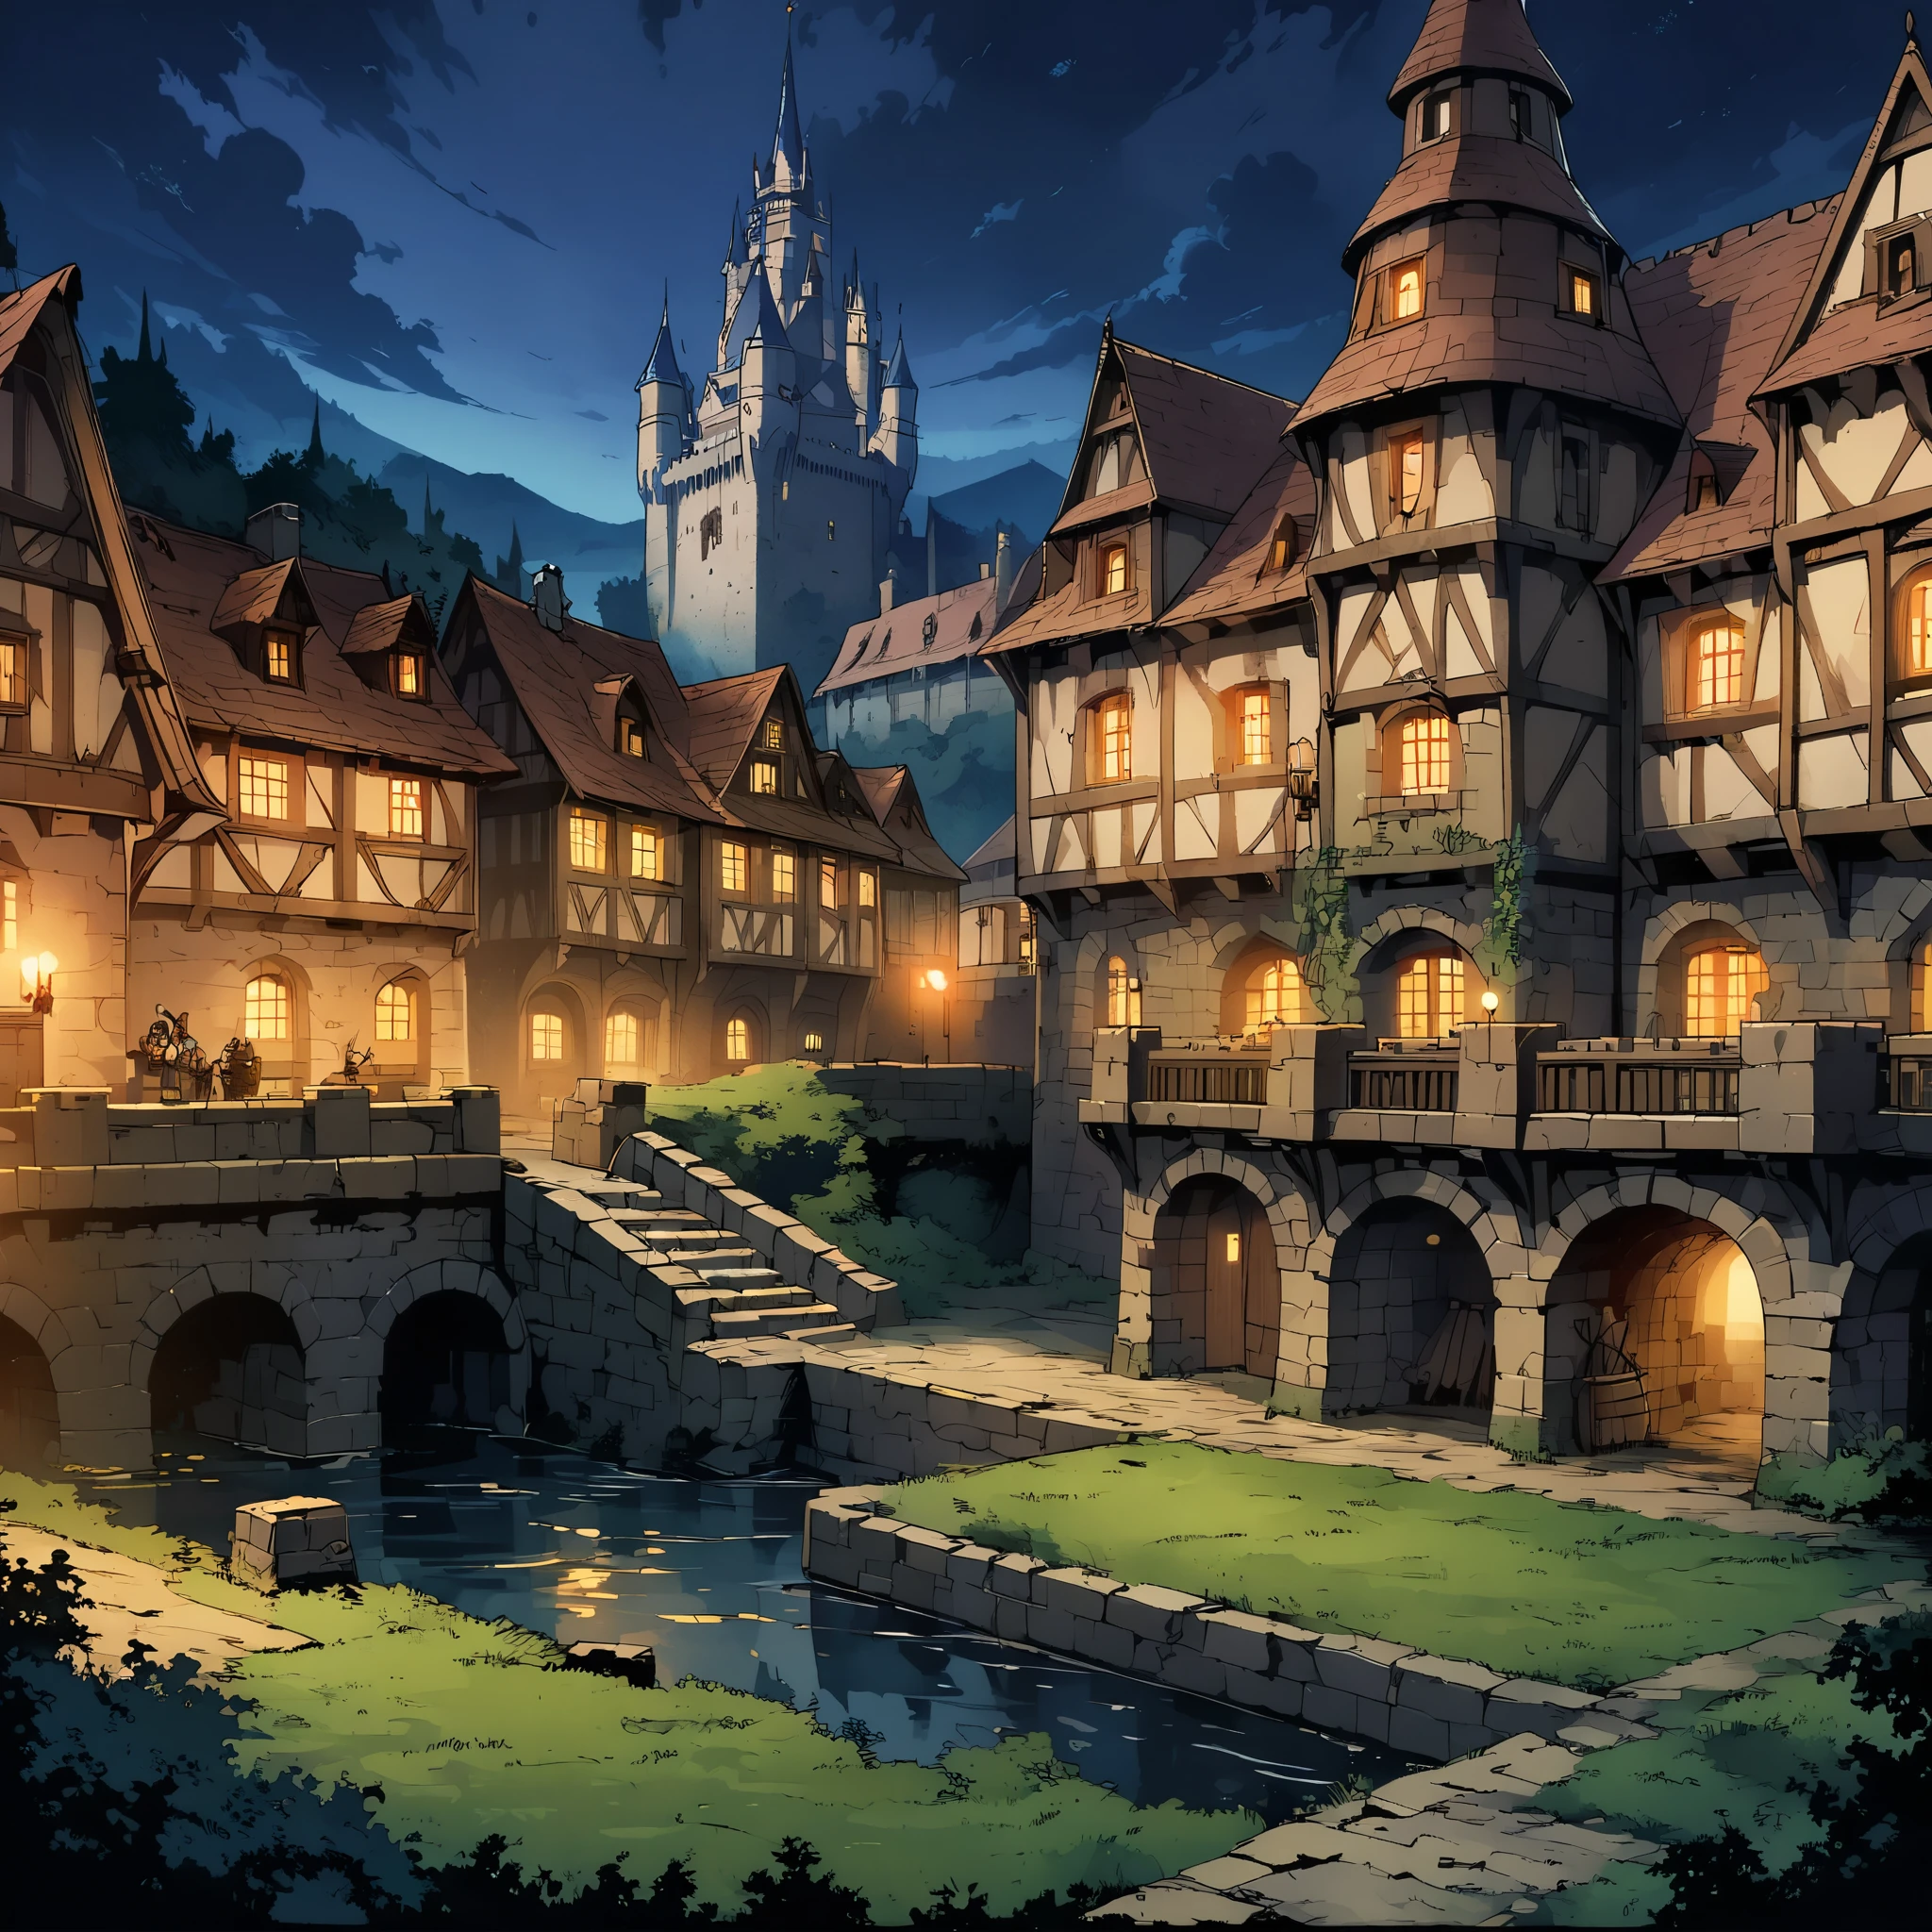 一座城堡(欧洲中世纪城堡)，城堡周围有护城河，夜景。中景构图，全景图片，场景画面，游戏概念艺术风格，动漫插画风格，高清，4k。